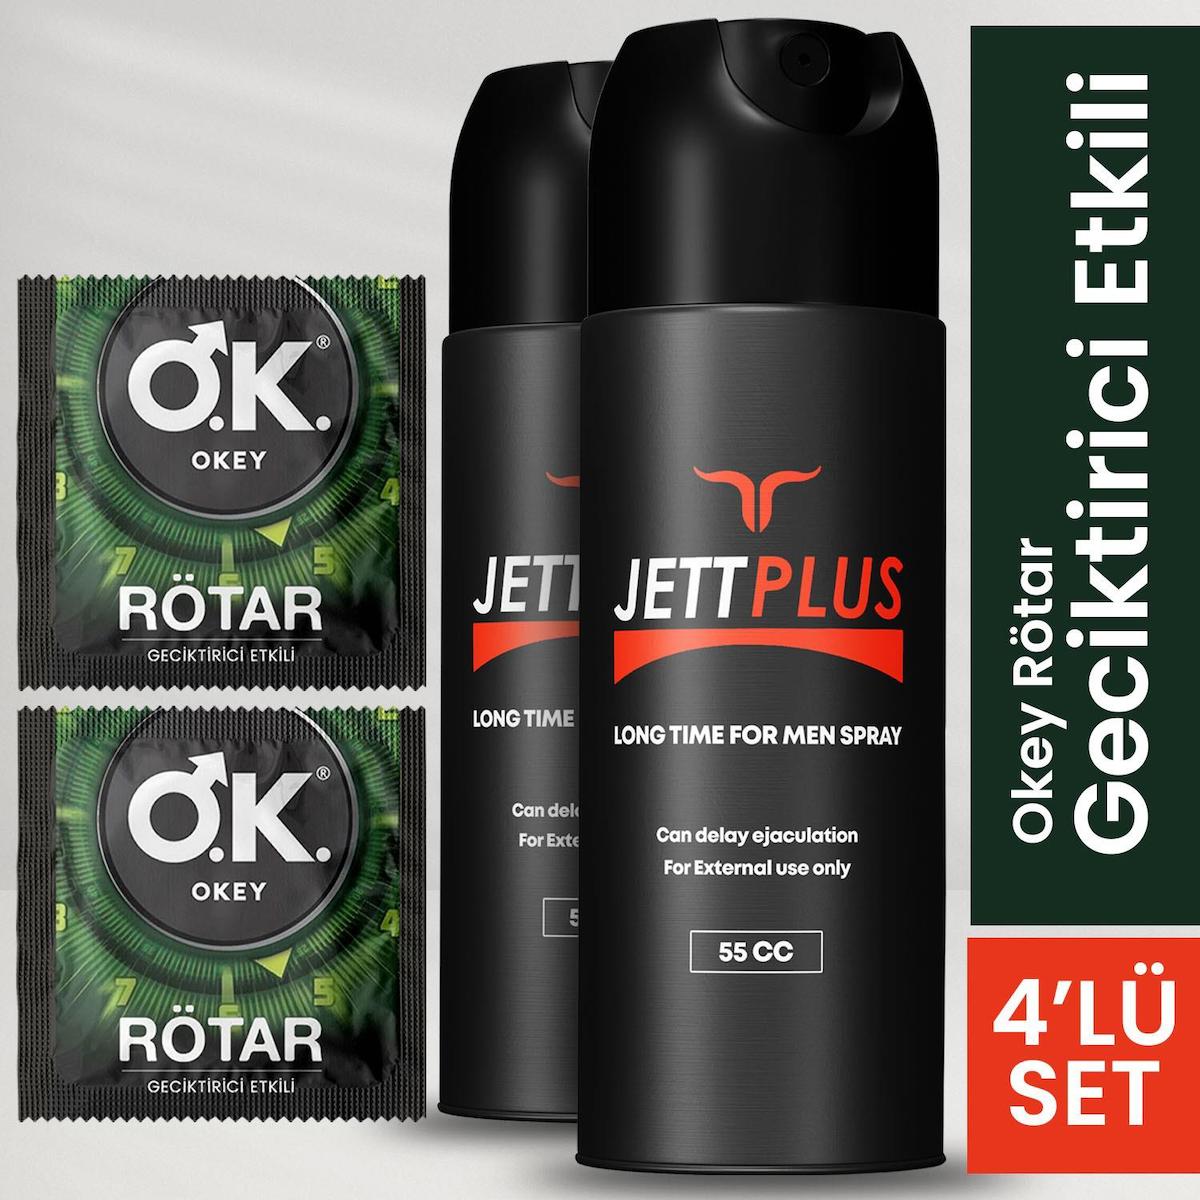 Jettplus Erkeklere Özel Geciktirici Etkili Sprey 2 Adet + 2 Adet Tek Kullanımlık Geciktirici Etkili Prezervatif